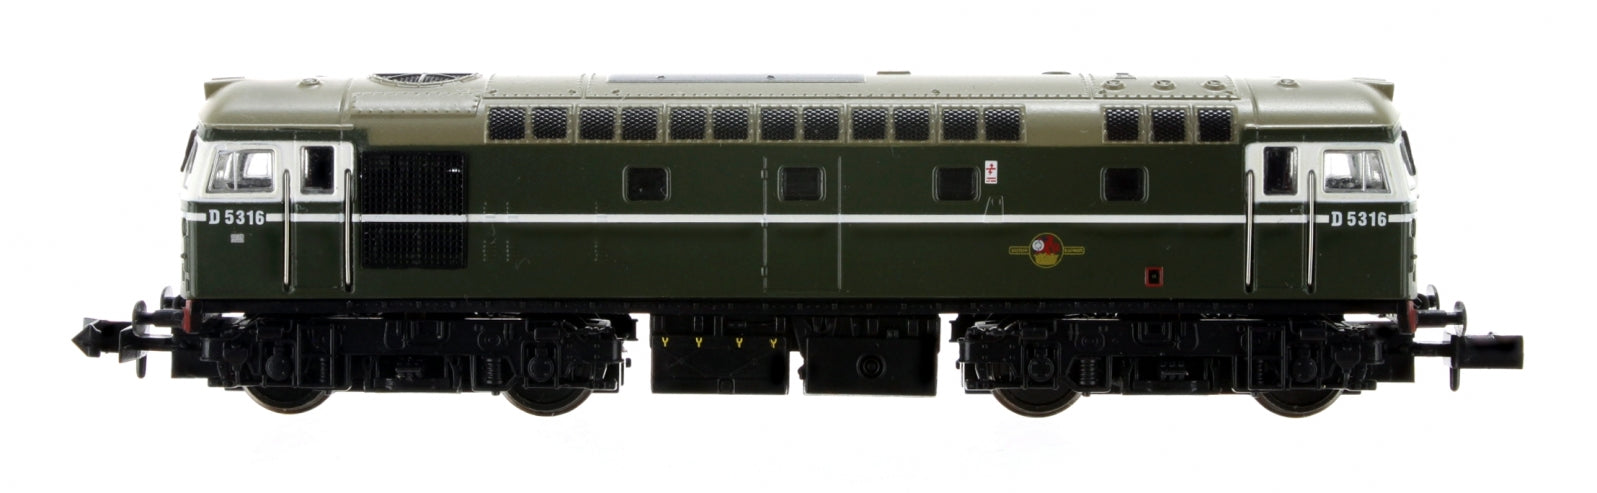 2D-028-001 N Gauge Class 26 D5316 BR Green Headcode